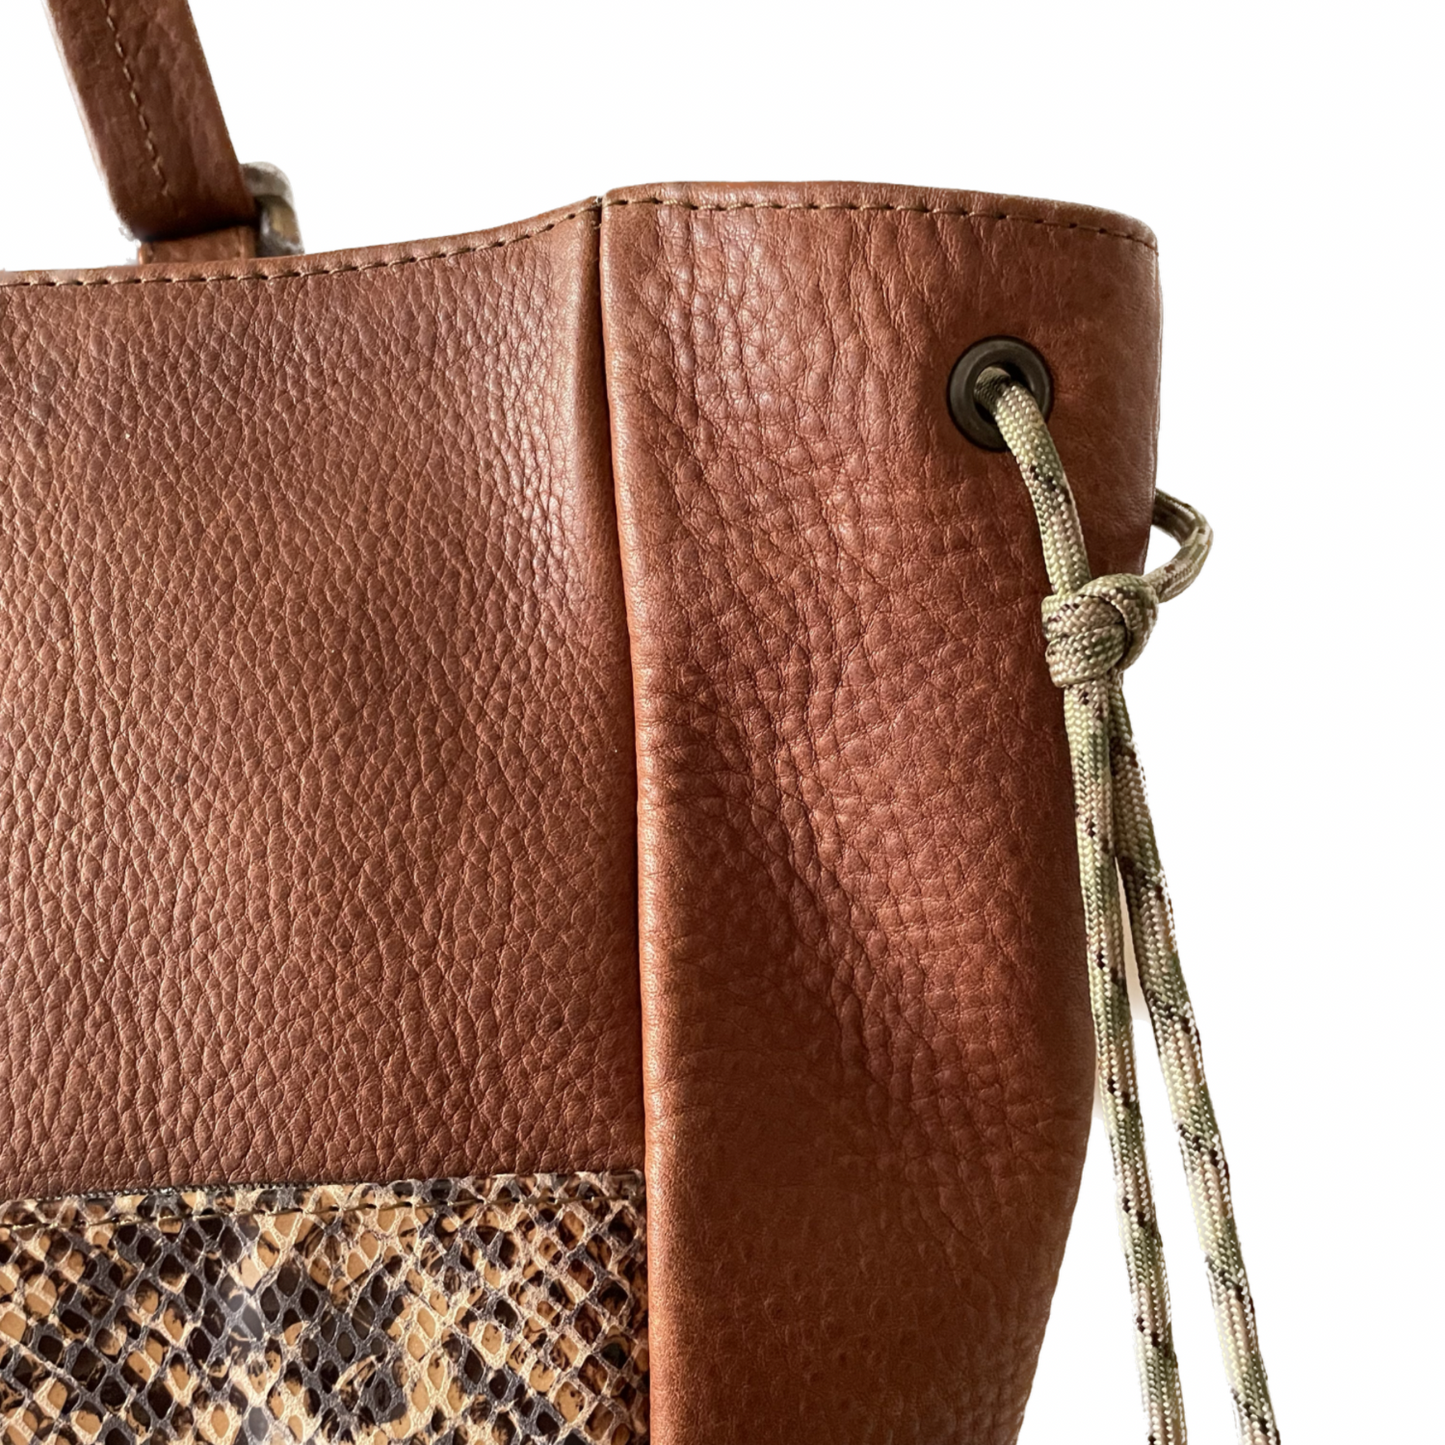 Mediterranean Date Brown Repurposed Leather Adjustable Tote Bag